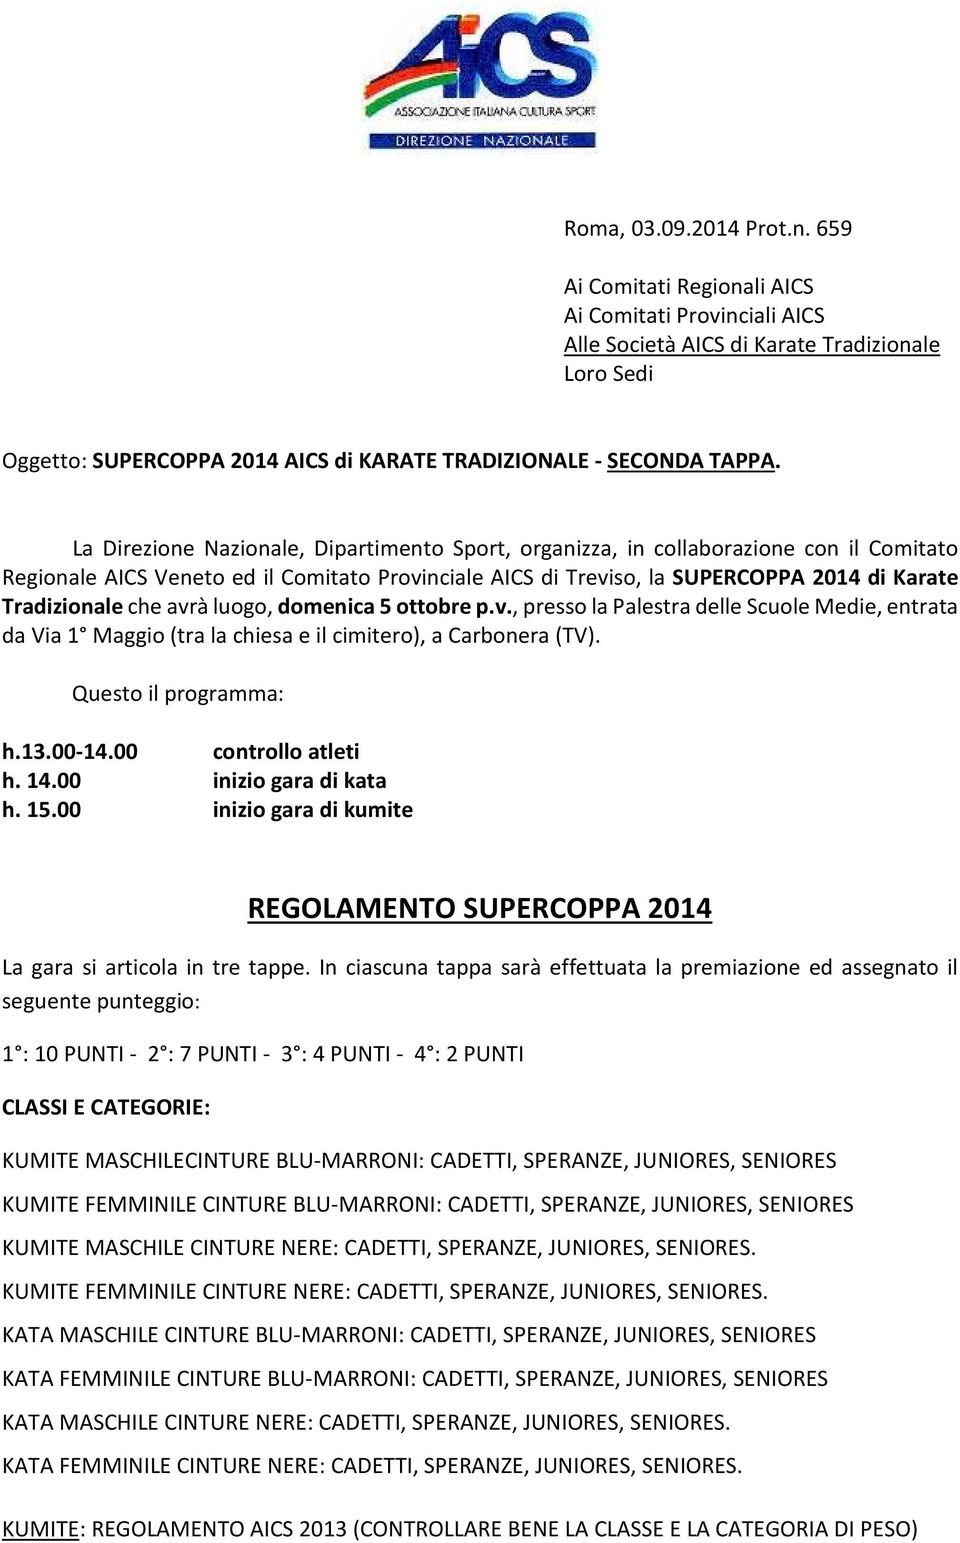 La Direzione Nazionale, Dipartimento Sport, organizza, in collaborazione con il Comitato Regionale AICS Veneto ed il Comitato Provinciale AICS di Treviso, la SUPERCOPPA 2014 di Karate Tradizionale